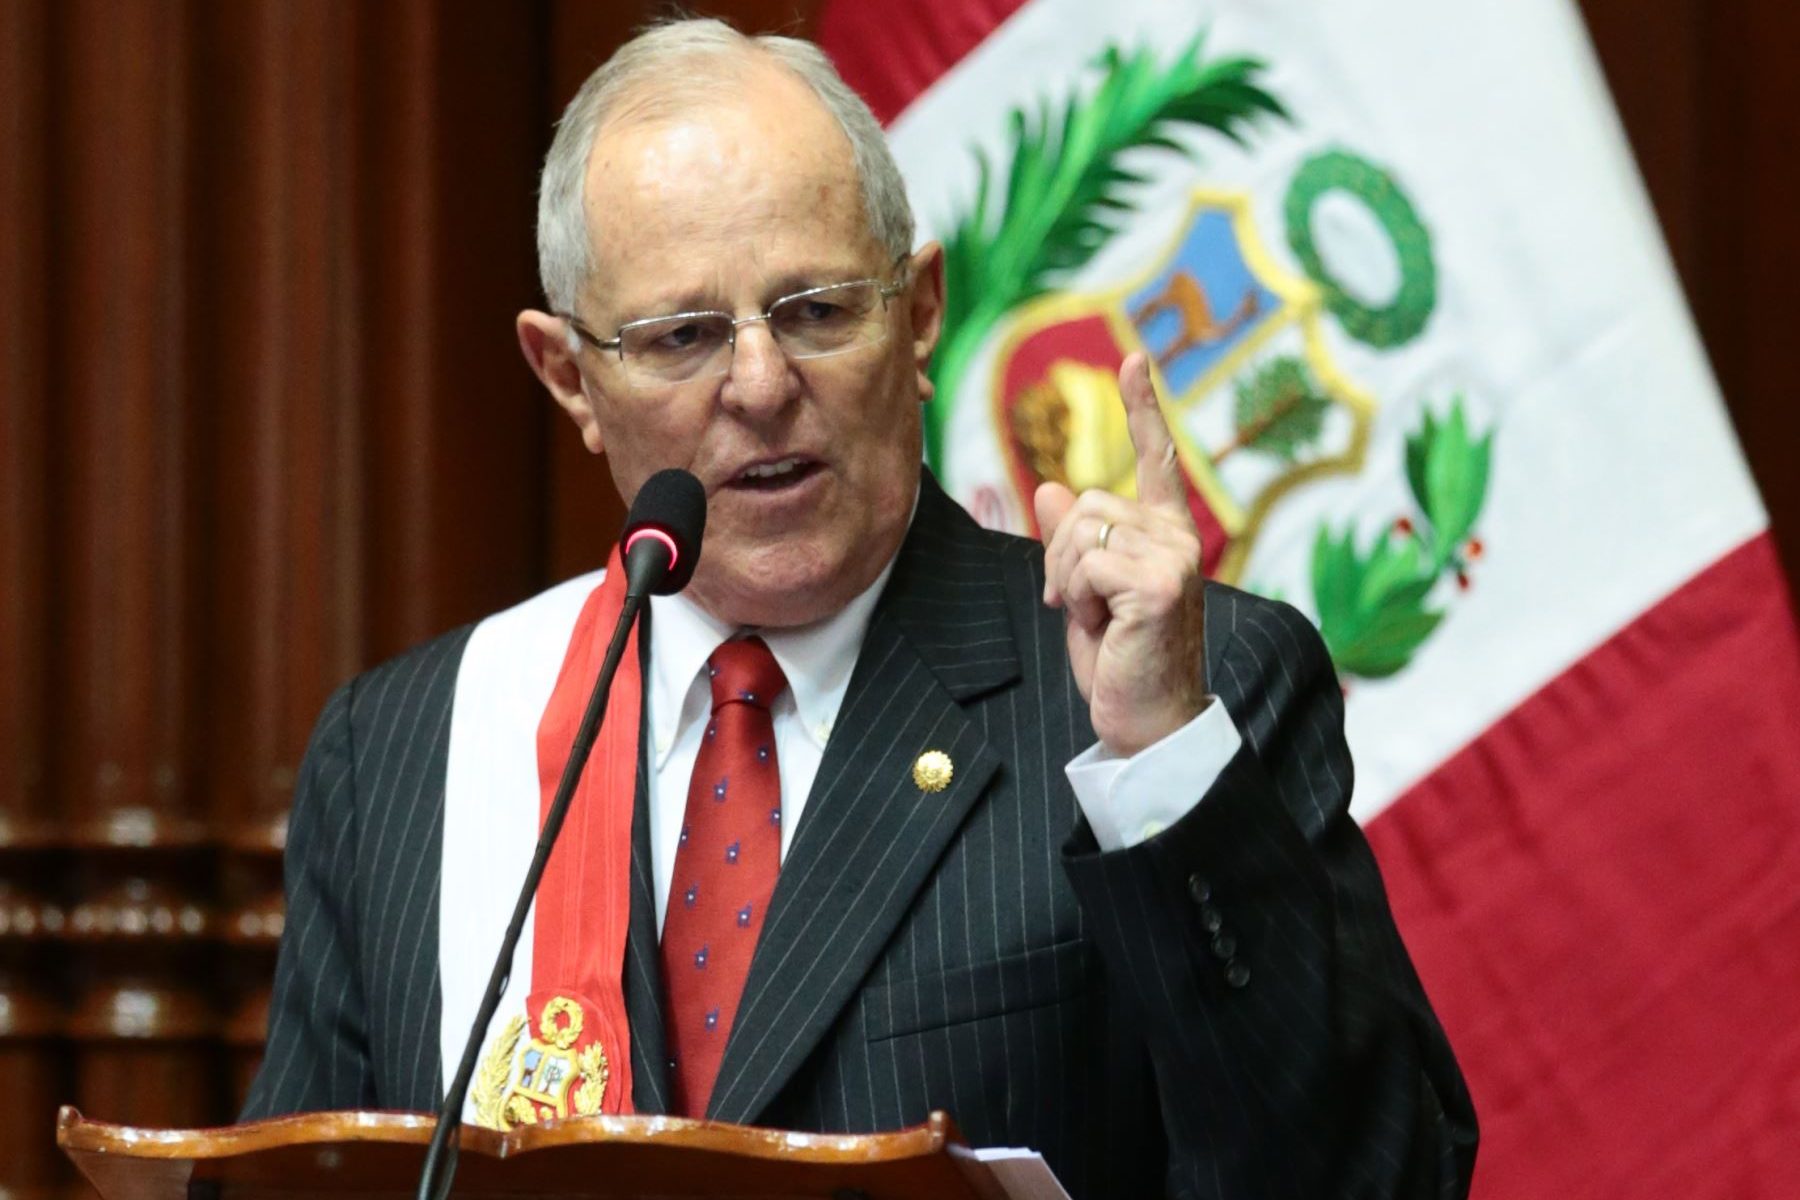  Congreso aceptó la renuncia de PPK a la presidencia del Perú